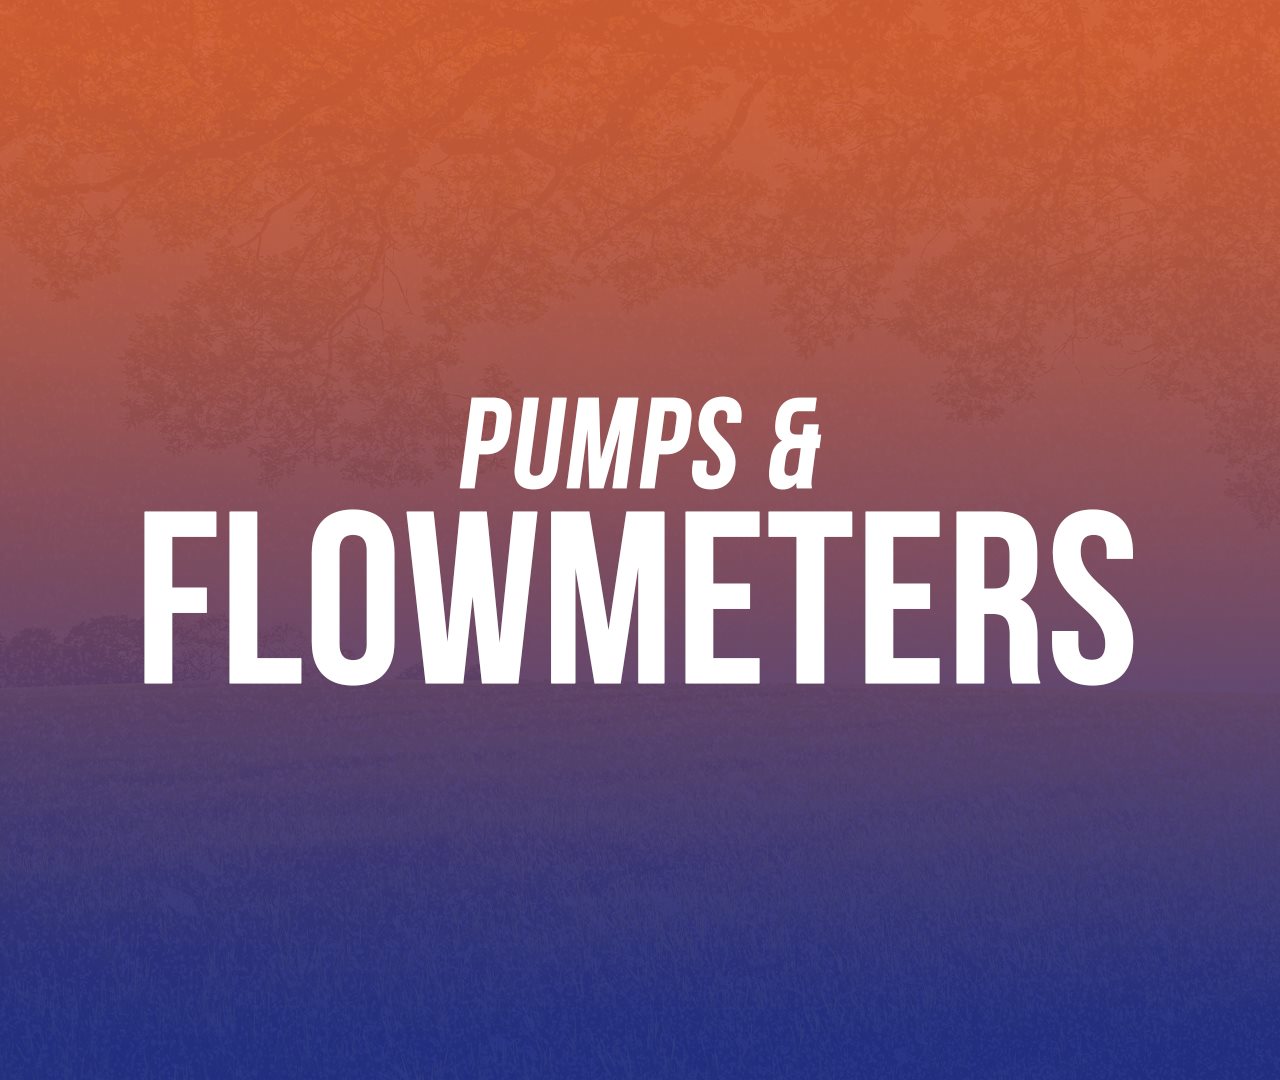 Pumps - Flowmeters